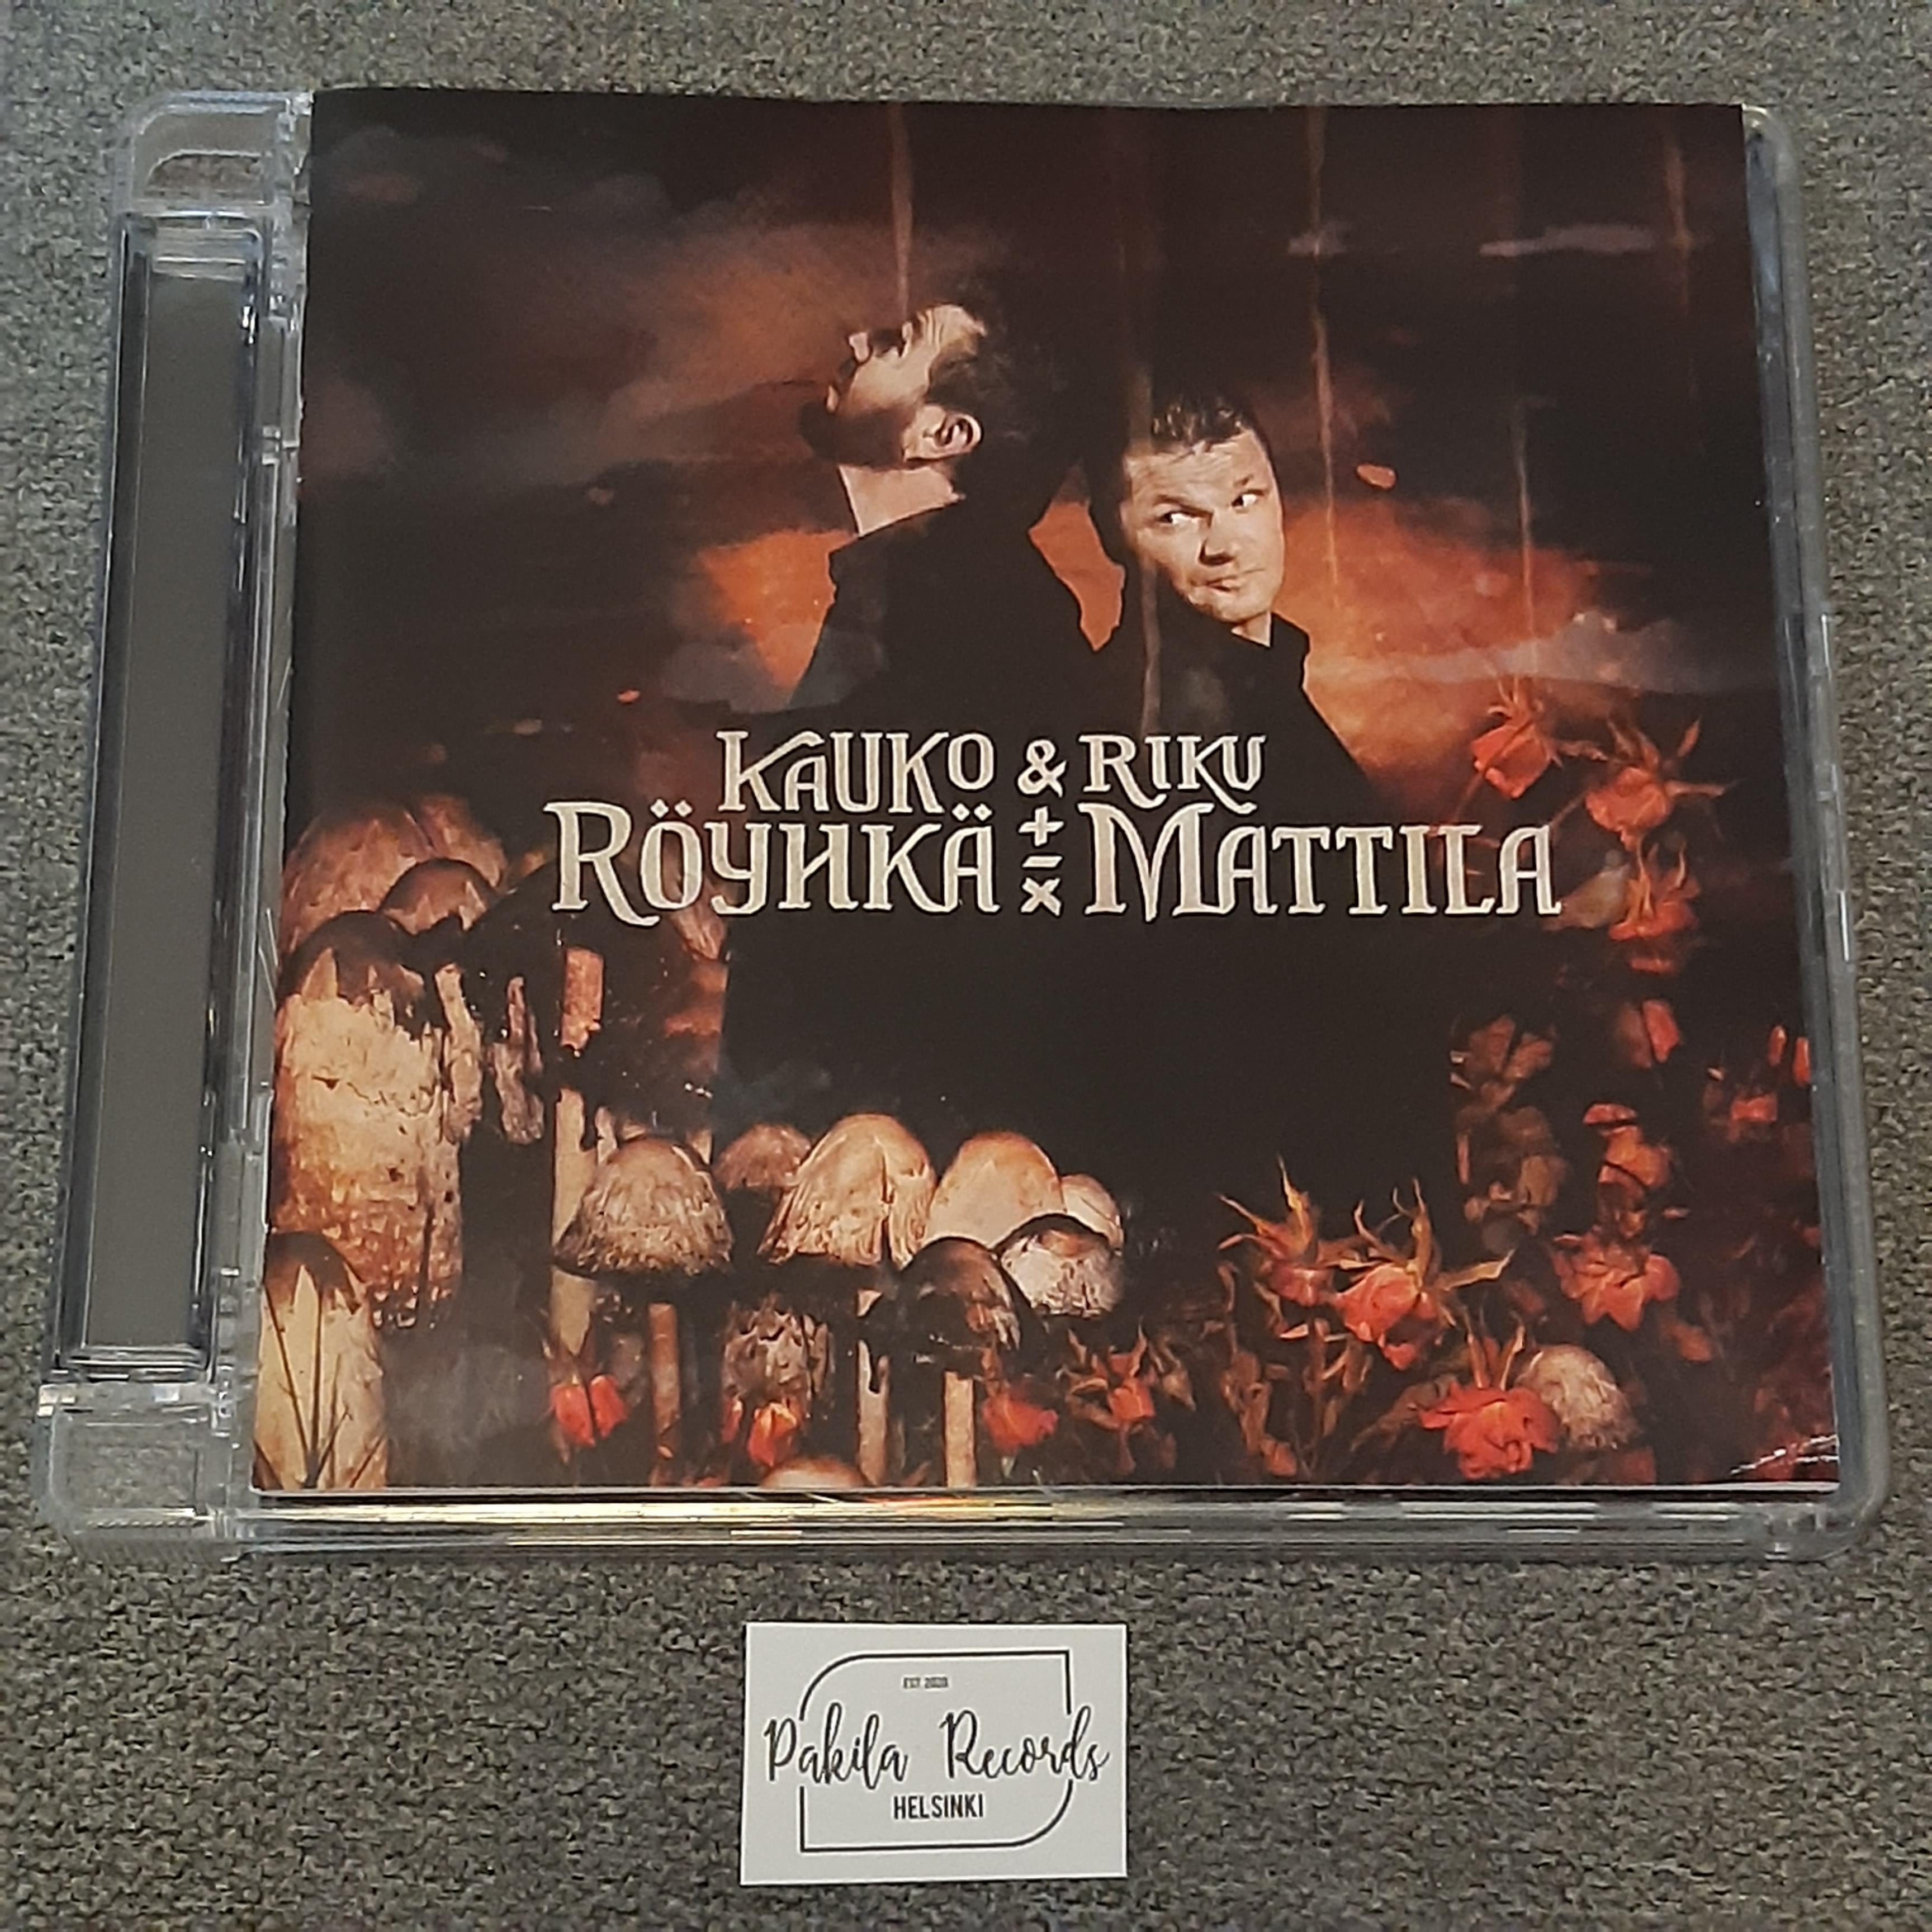 Kauko Röyhkä & Riku Mattila - Kauko Röyhkä & Riku Mattila - CD (käytetty)